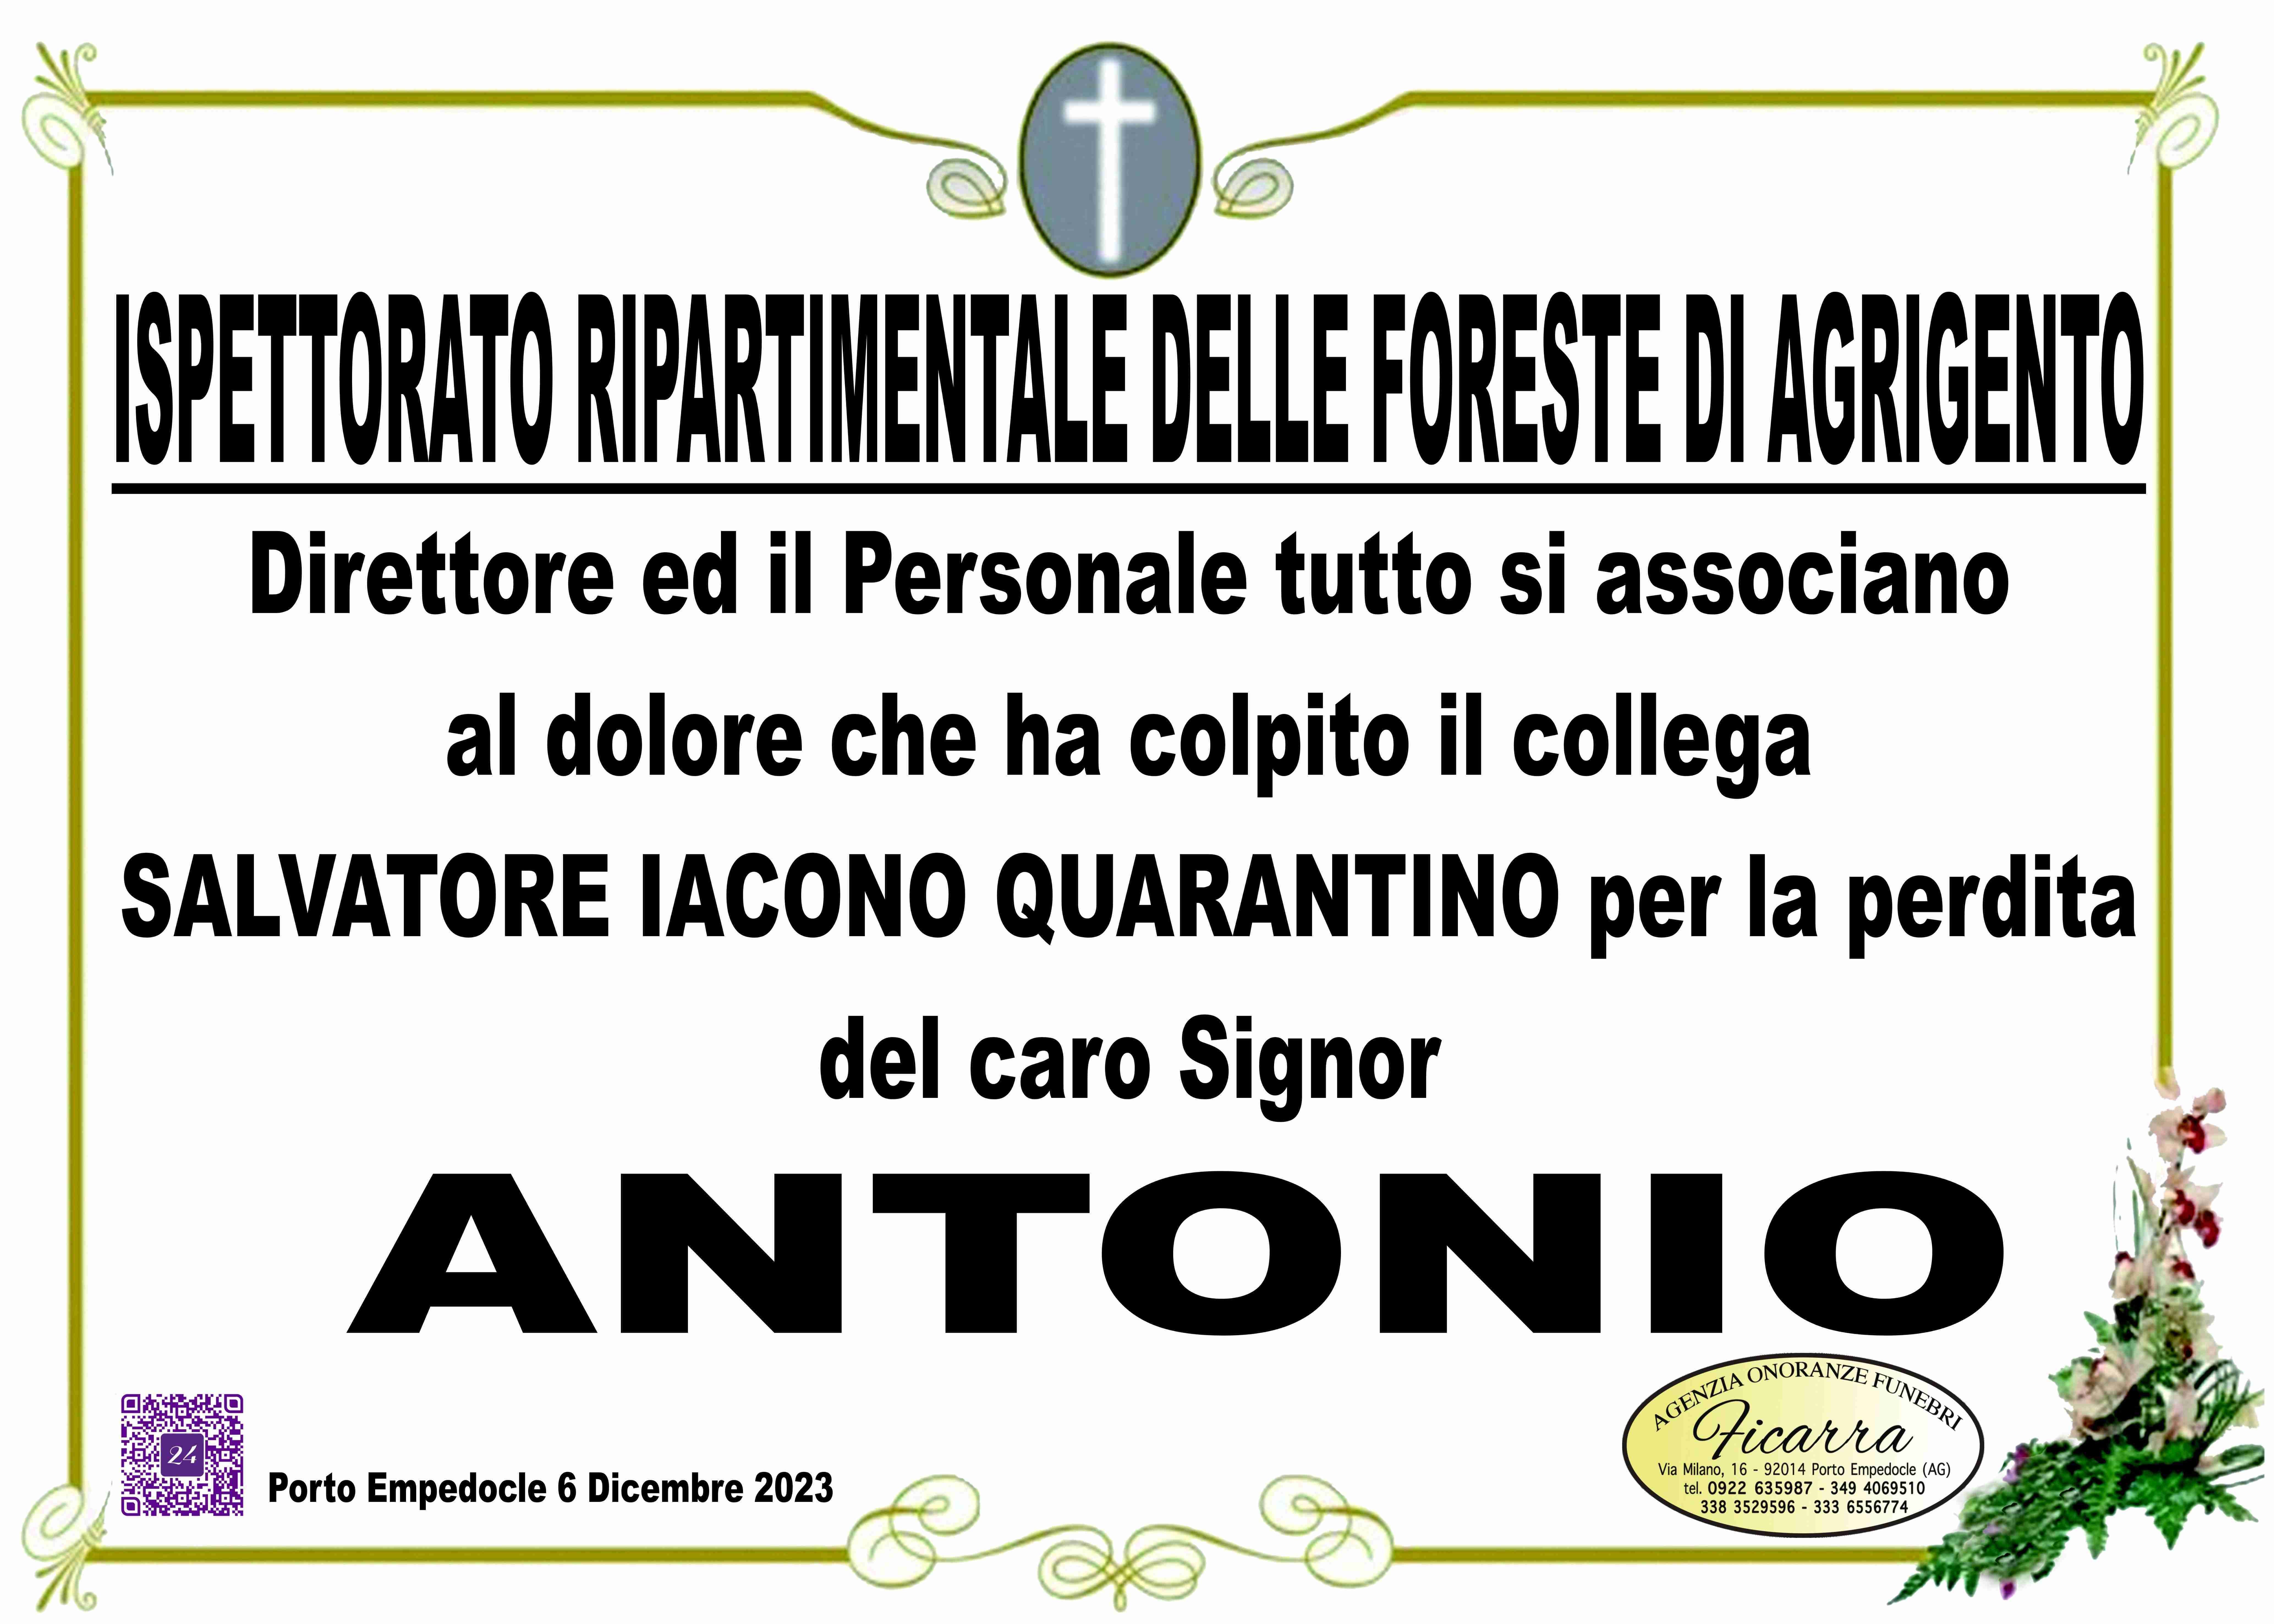 Antonio Iacono Quarantino